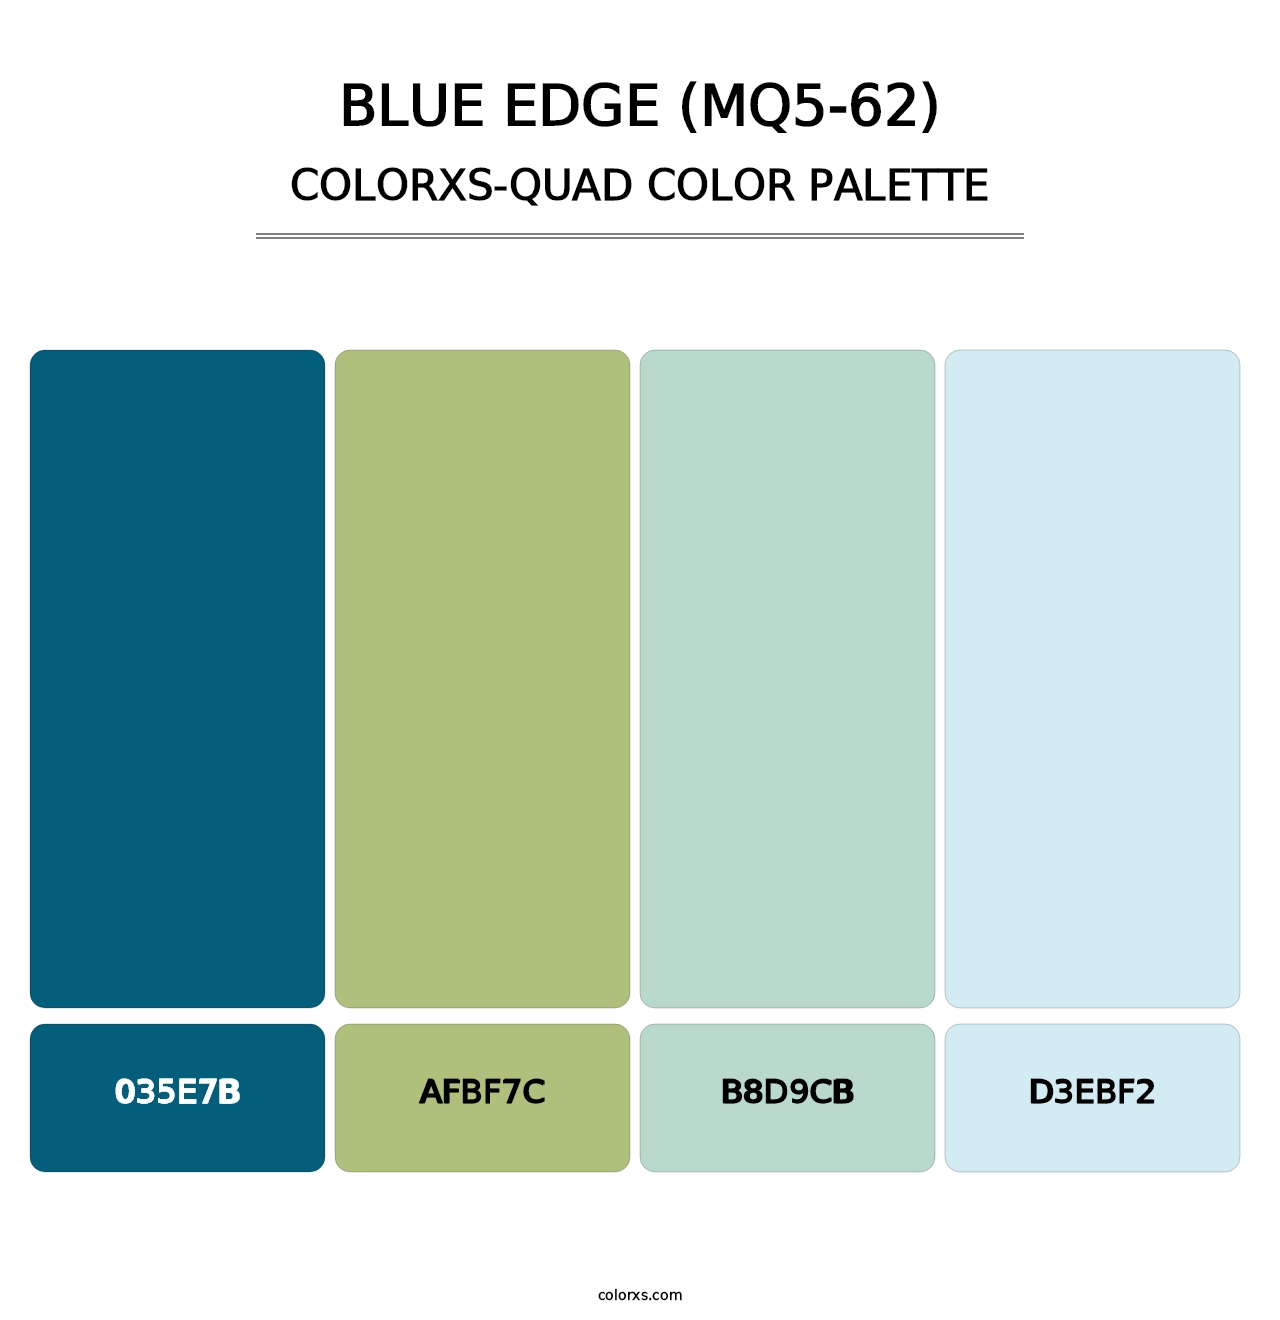 Blue Edge (MQ5-62) - Colorxs Quad Palette